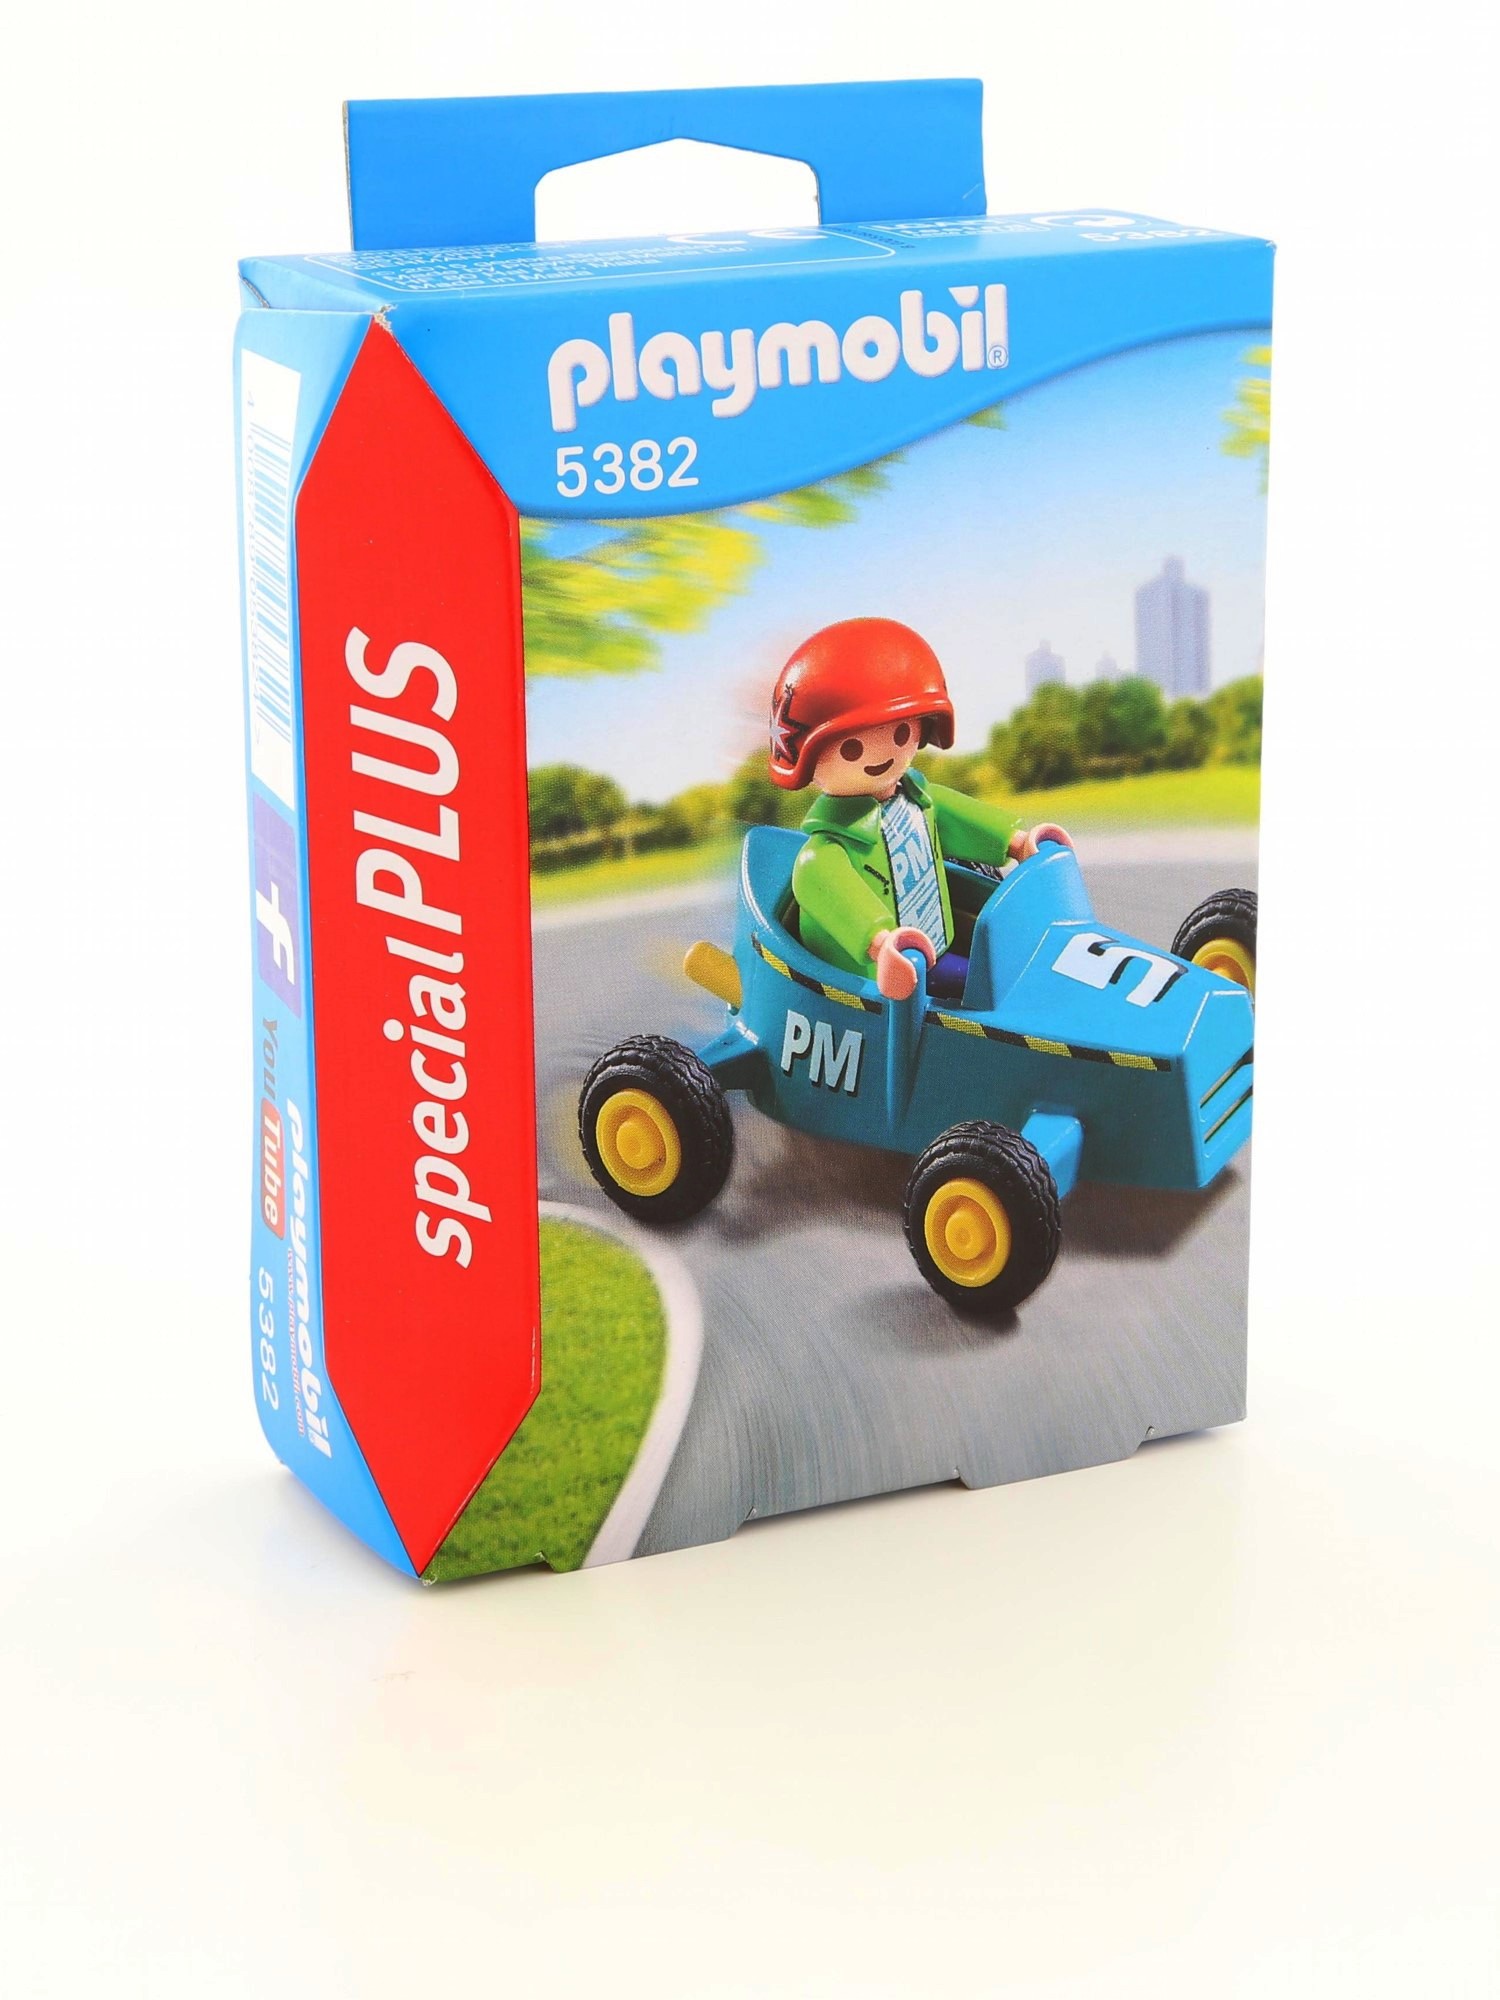 لعبة مجموعة بناء وتركيب مكعبات على شكل ولد مع عربة سباق من بلاي موبيل